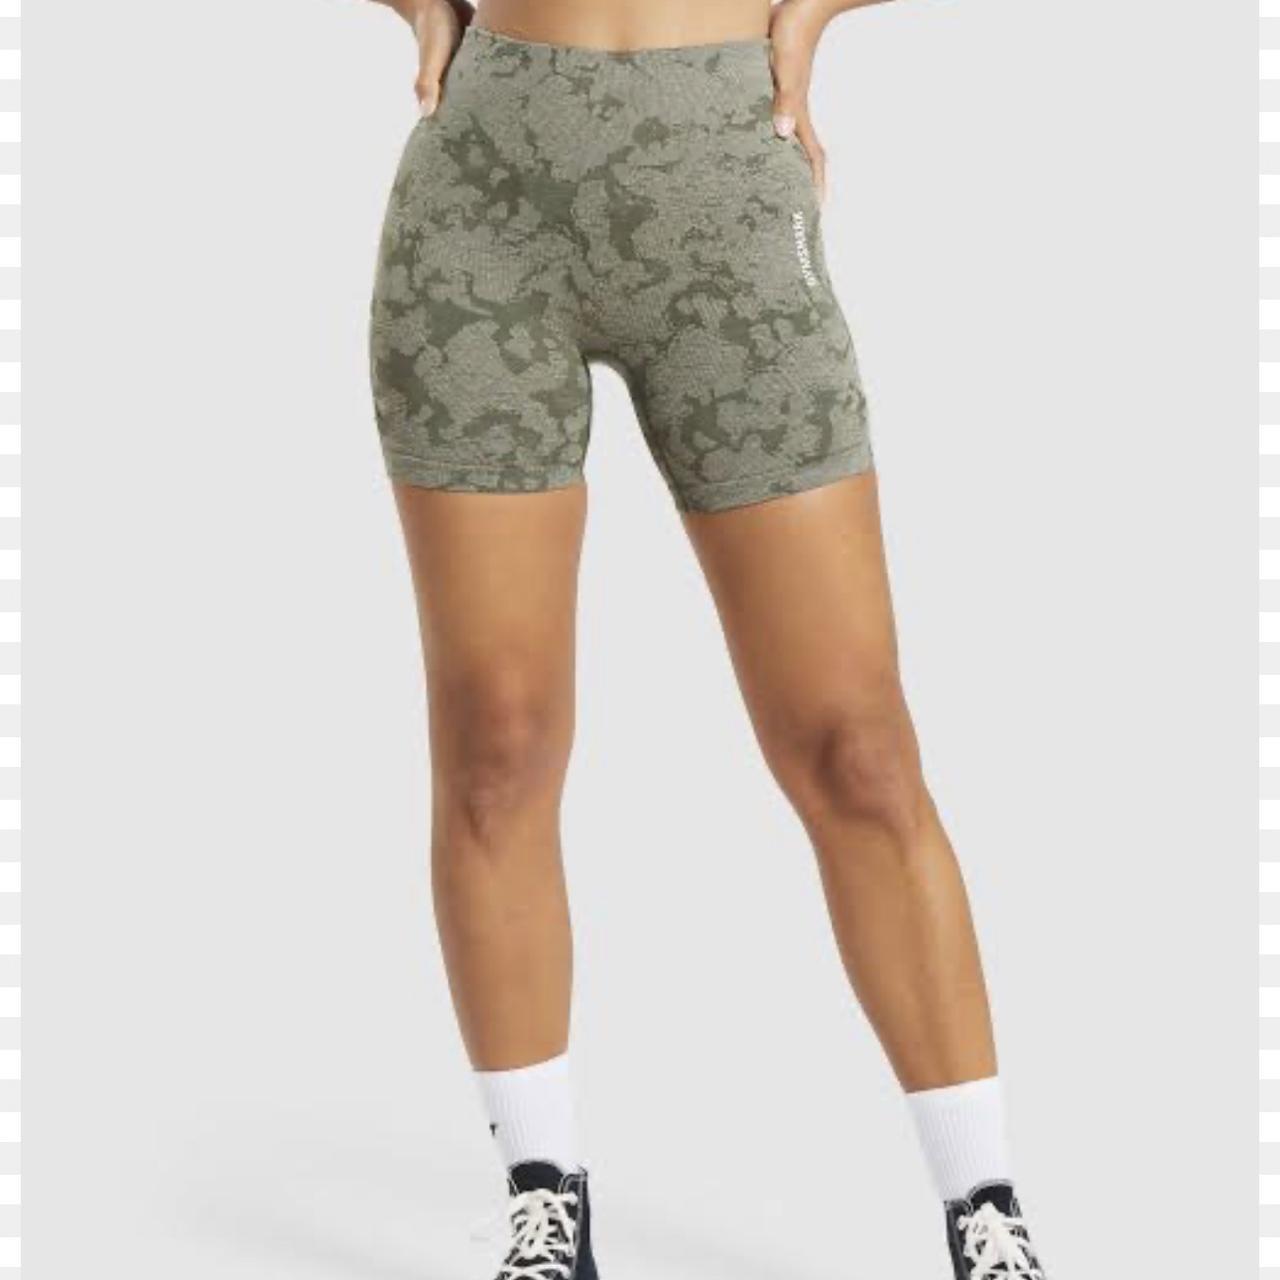 Gymshark adapt camo seamless shorts. Just don't wear - Depop